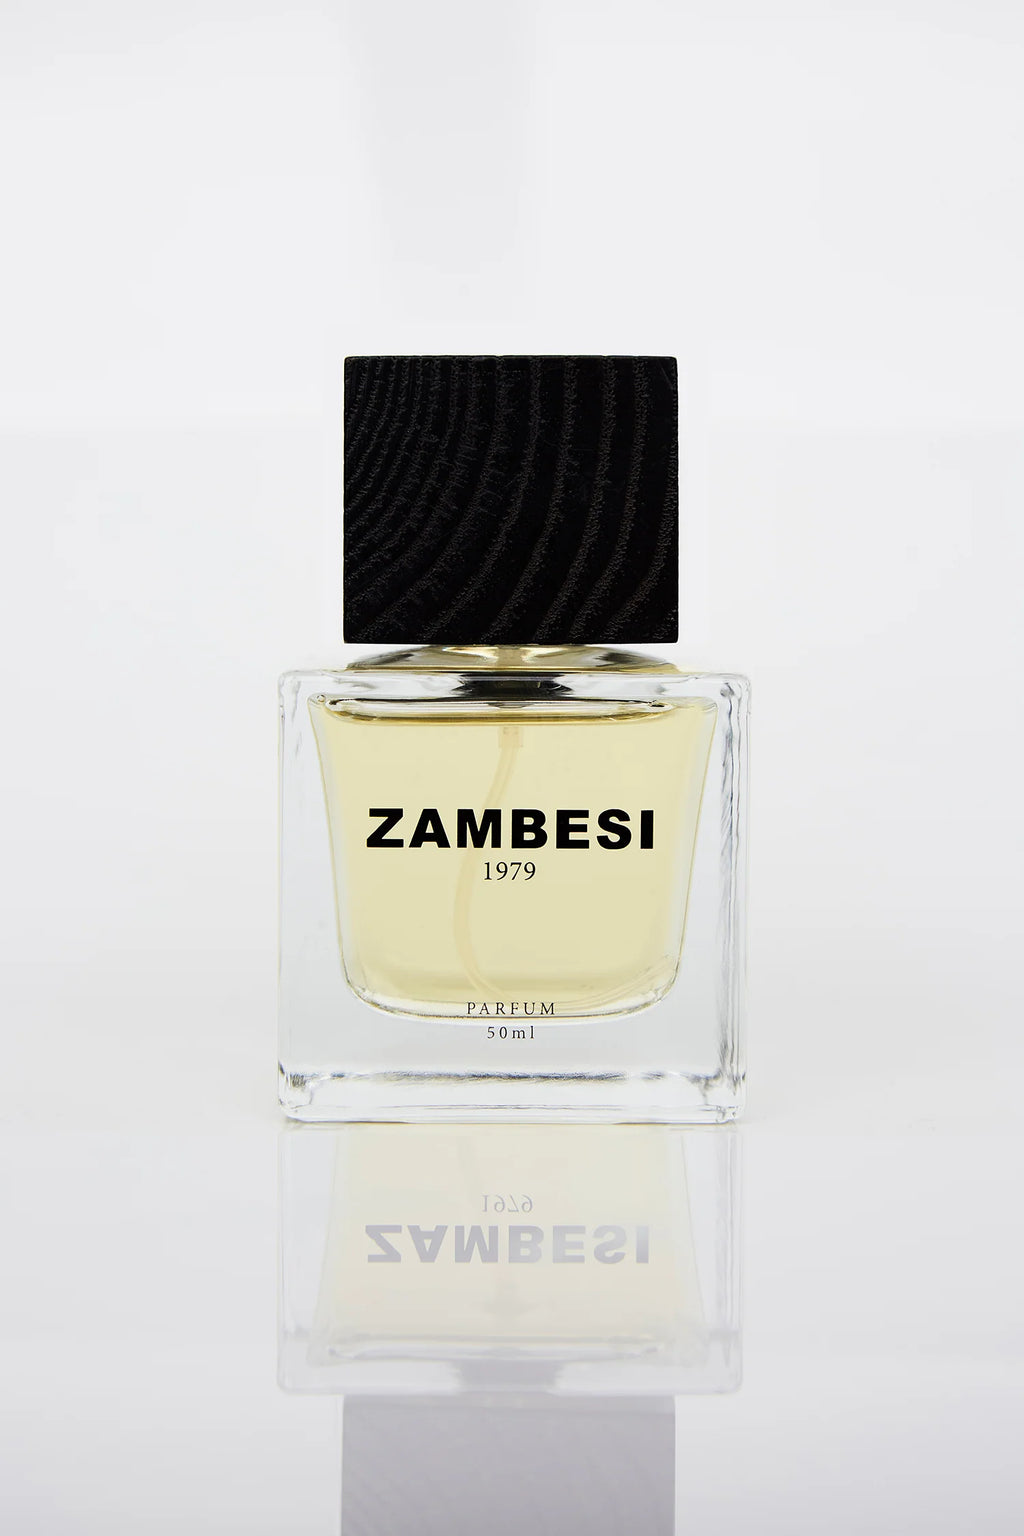 Zambesi 1979 Parfum